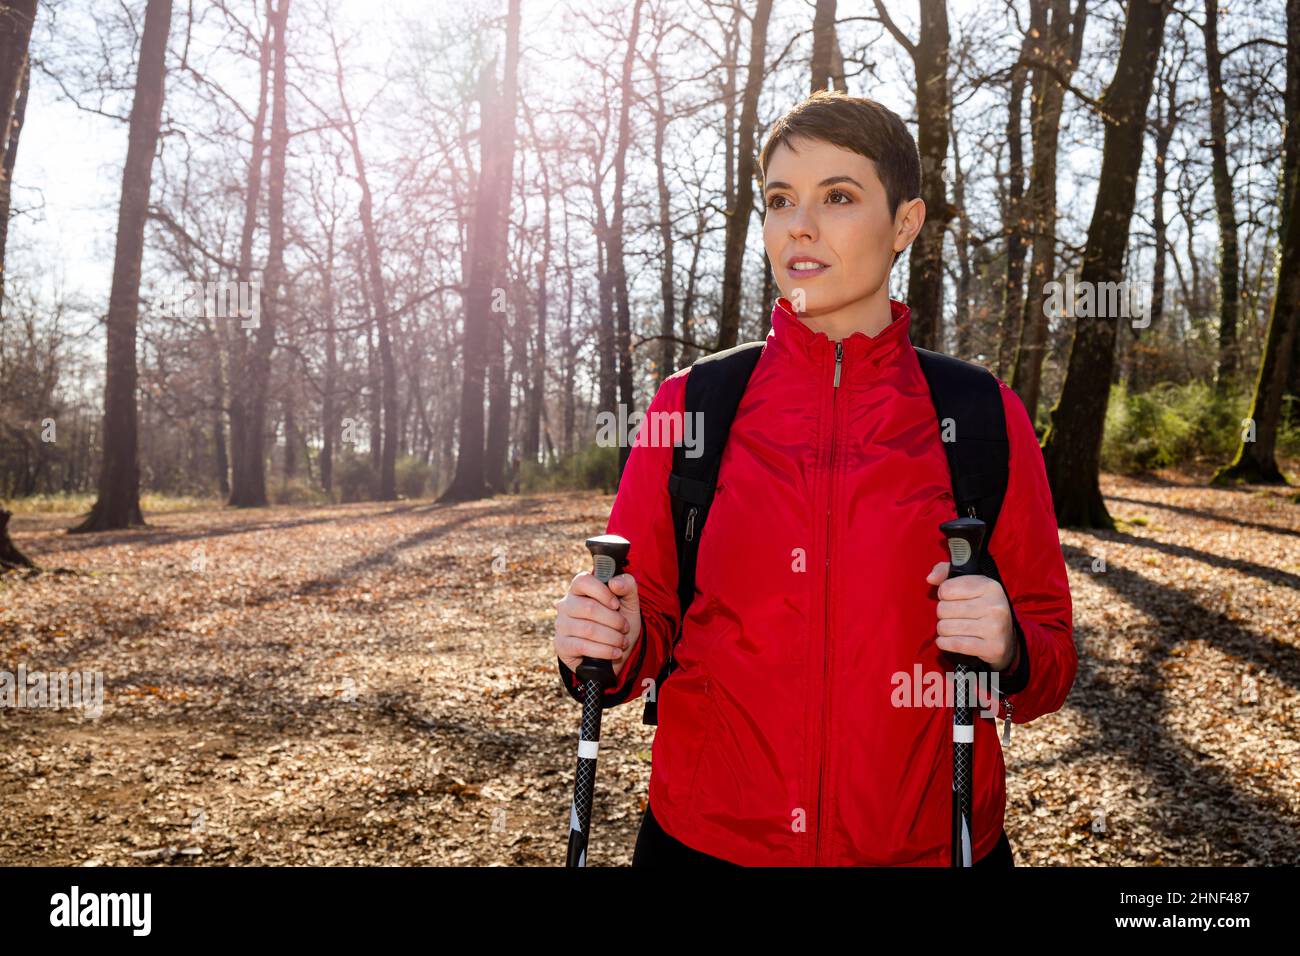 Die junge Frau macht eine Wanderung im Wald. Die Frau hat kurze Haare, trägt eine rote Jacke und verwendet Trekkingstöcke. Reise- und Outdoor-Life-Konzept. Stockfoto